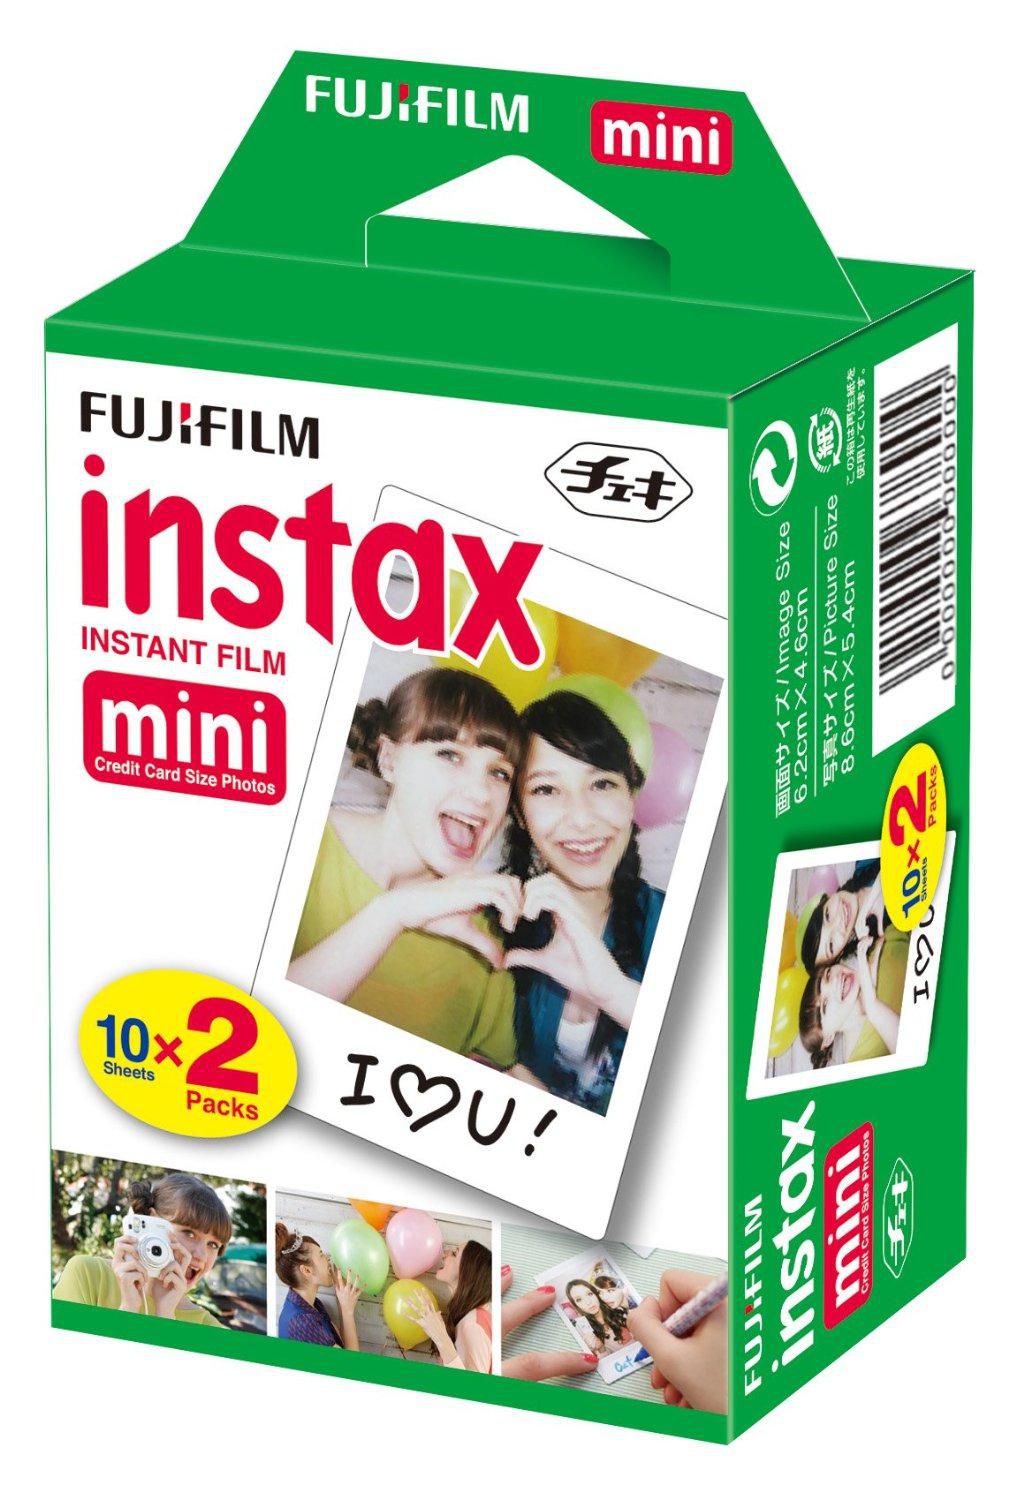 FUJIFILM 1x2 Instax Film Mini